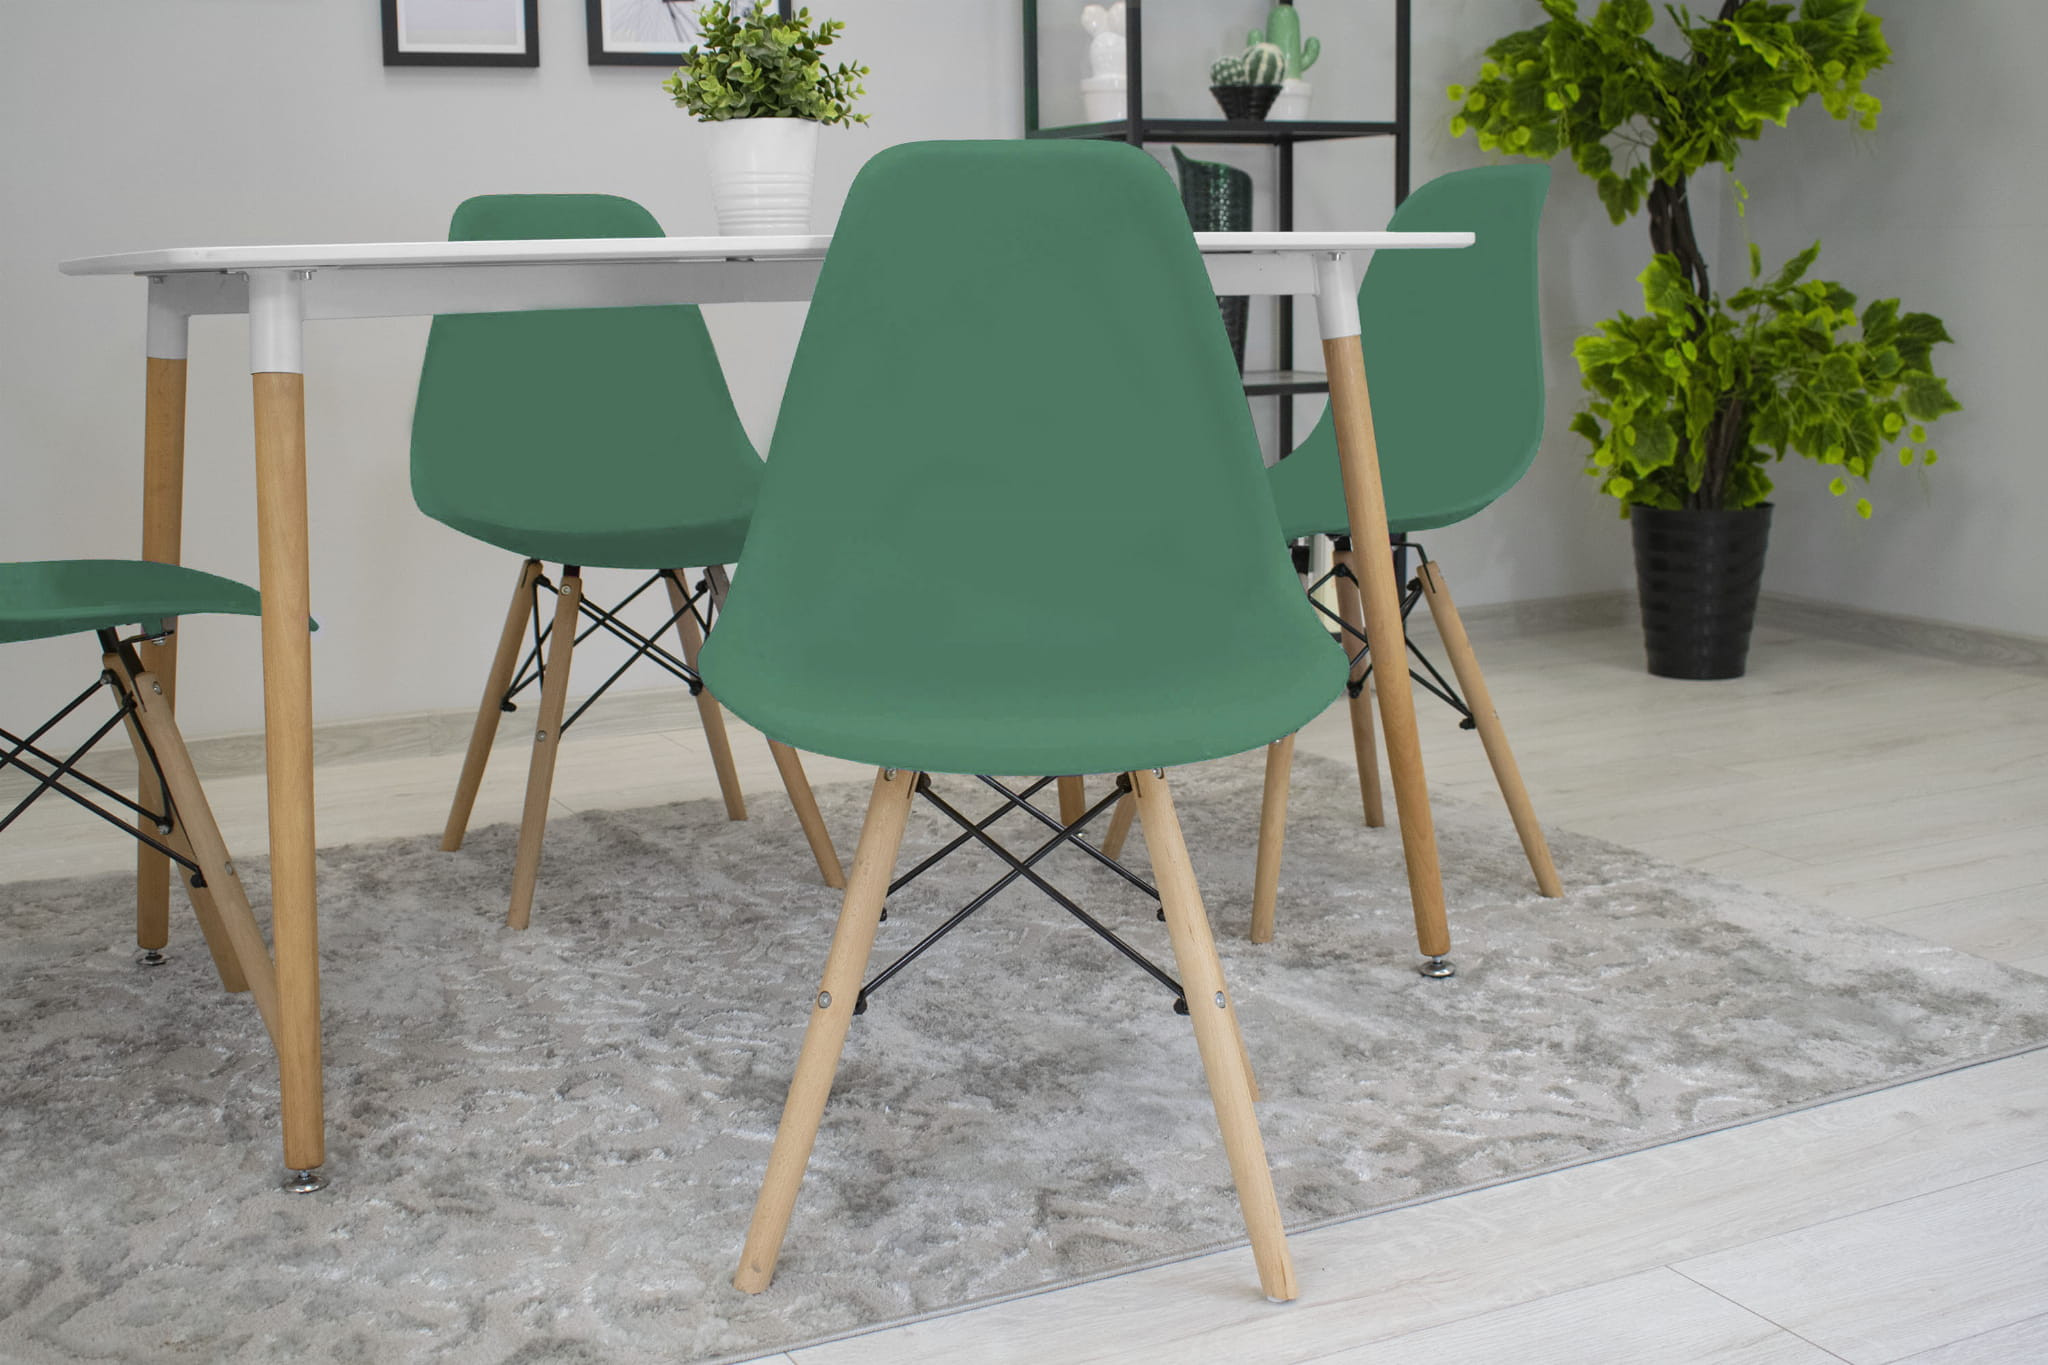 Jídelní židle OSAKA zelená (hnědé nohy)